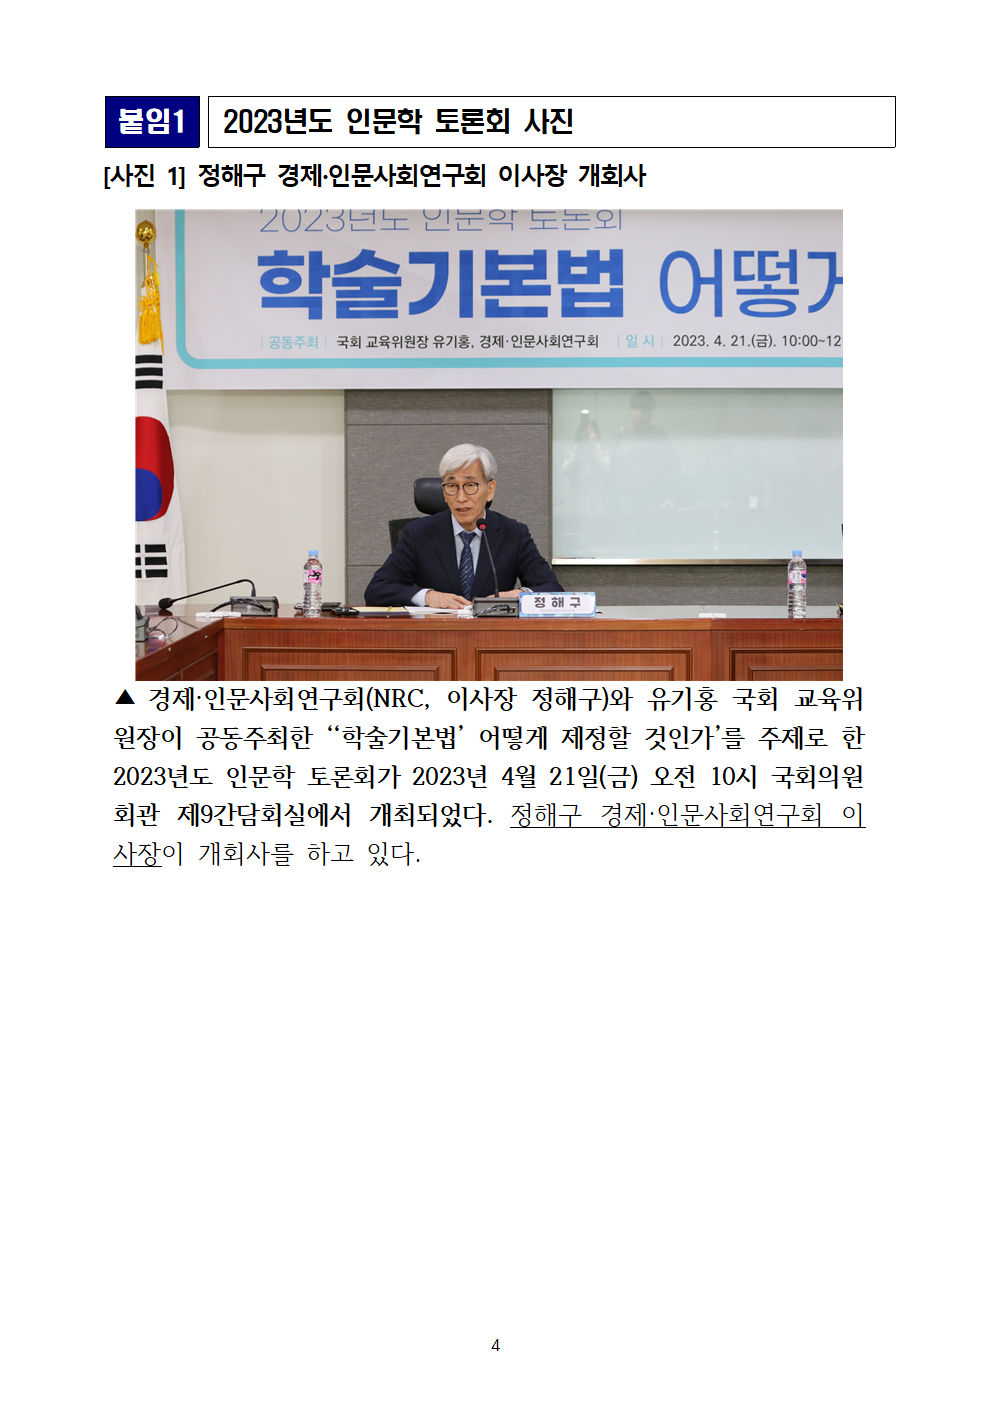 (4/6) 경제·인문사회연구회 2023년도 인문학 토론회 개최 - 자세한 내용은 하단 참조